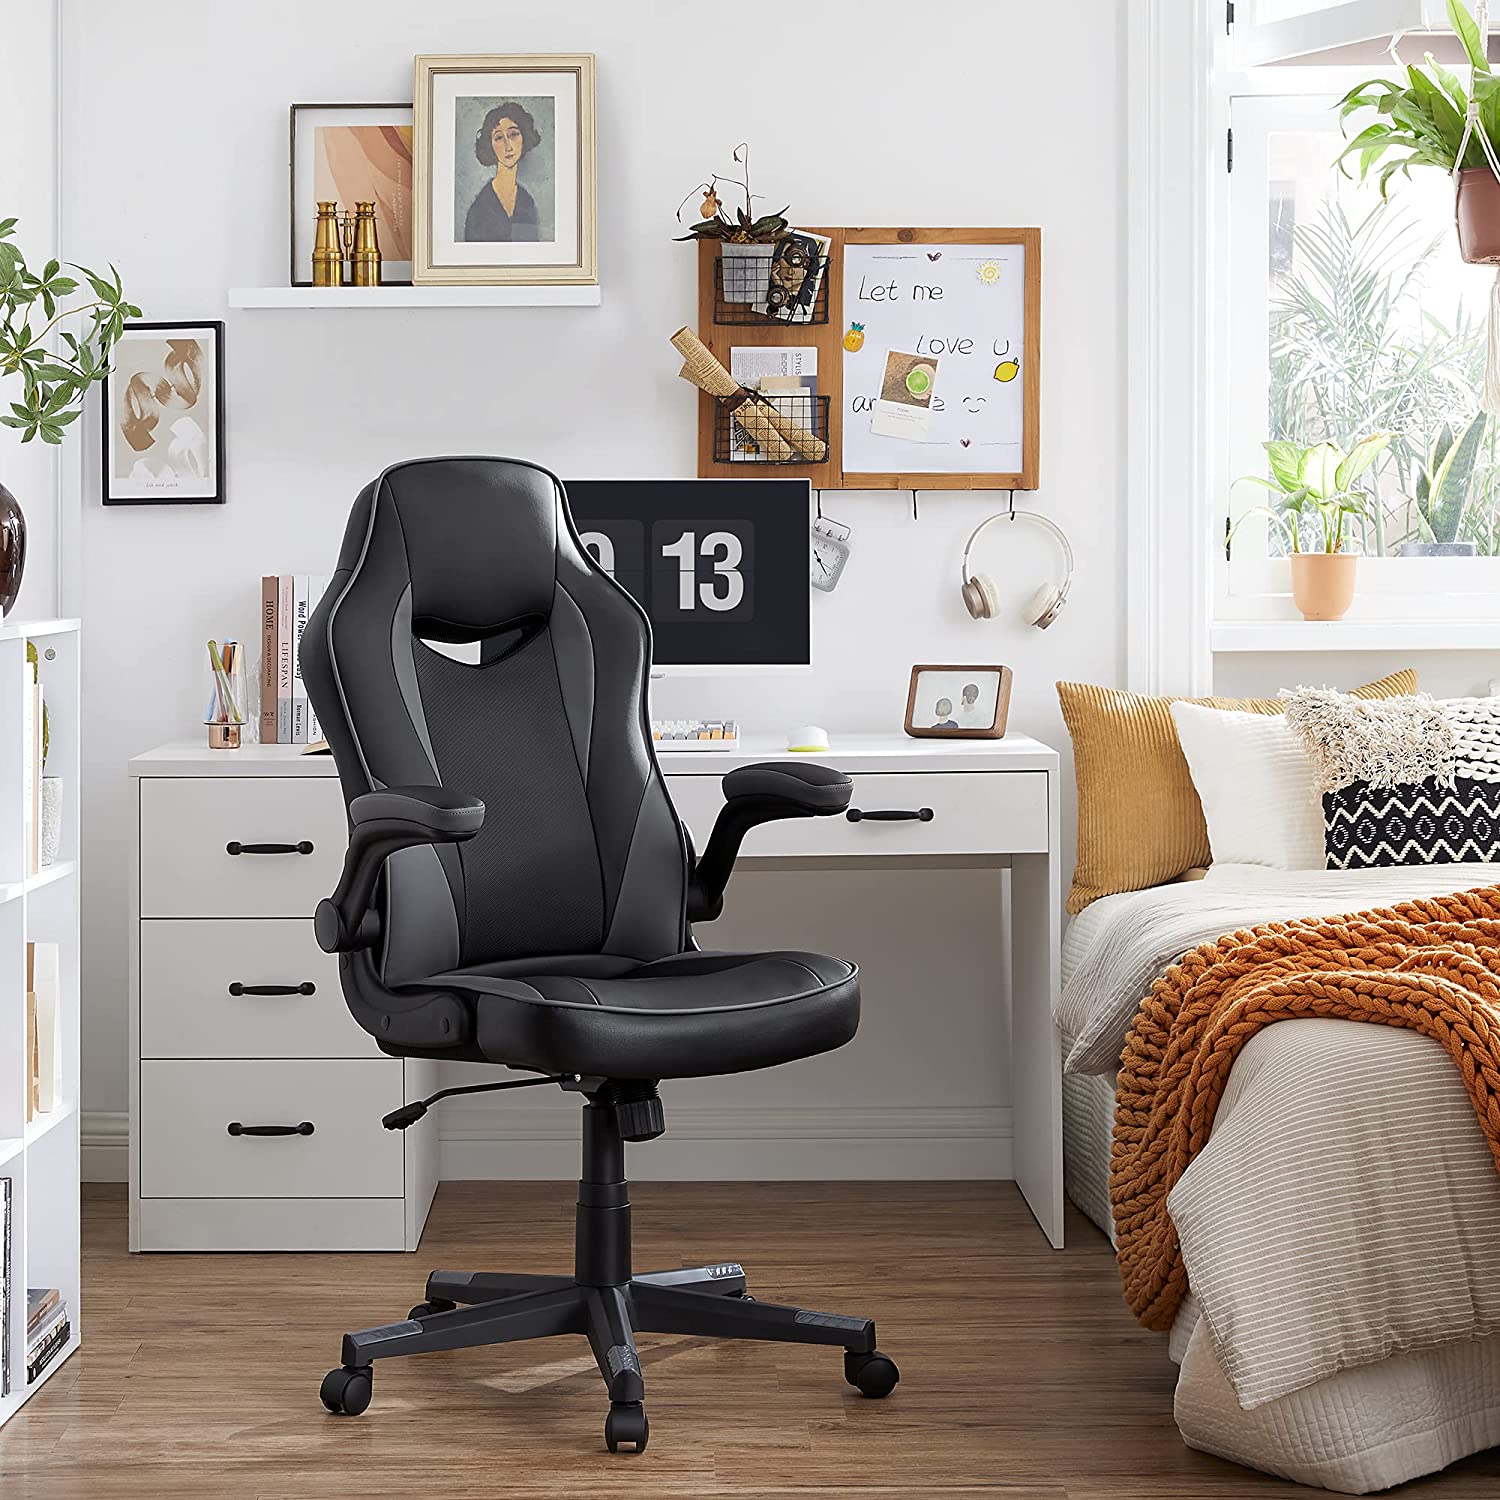 Nancy's Cooperage Chaise de bureau - Chaise pivotante - Ergonomique - Hauteur réglable - Simili cuir - Plastique - Noir 0 75 x 64 x (110-120) cm 